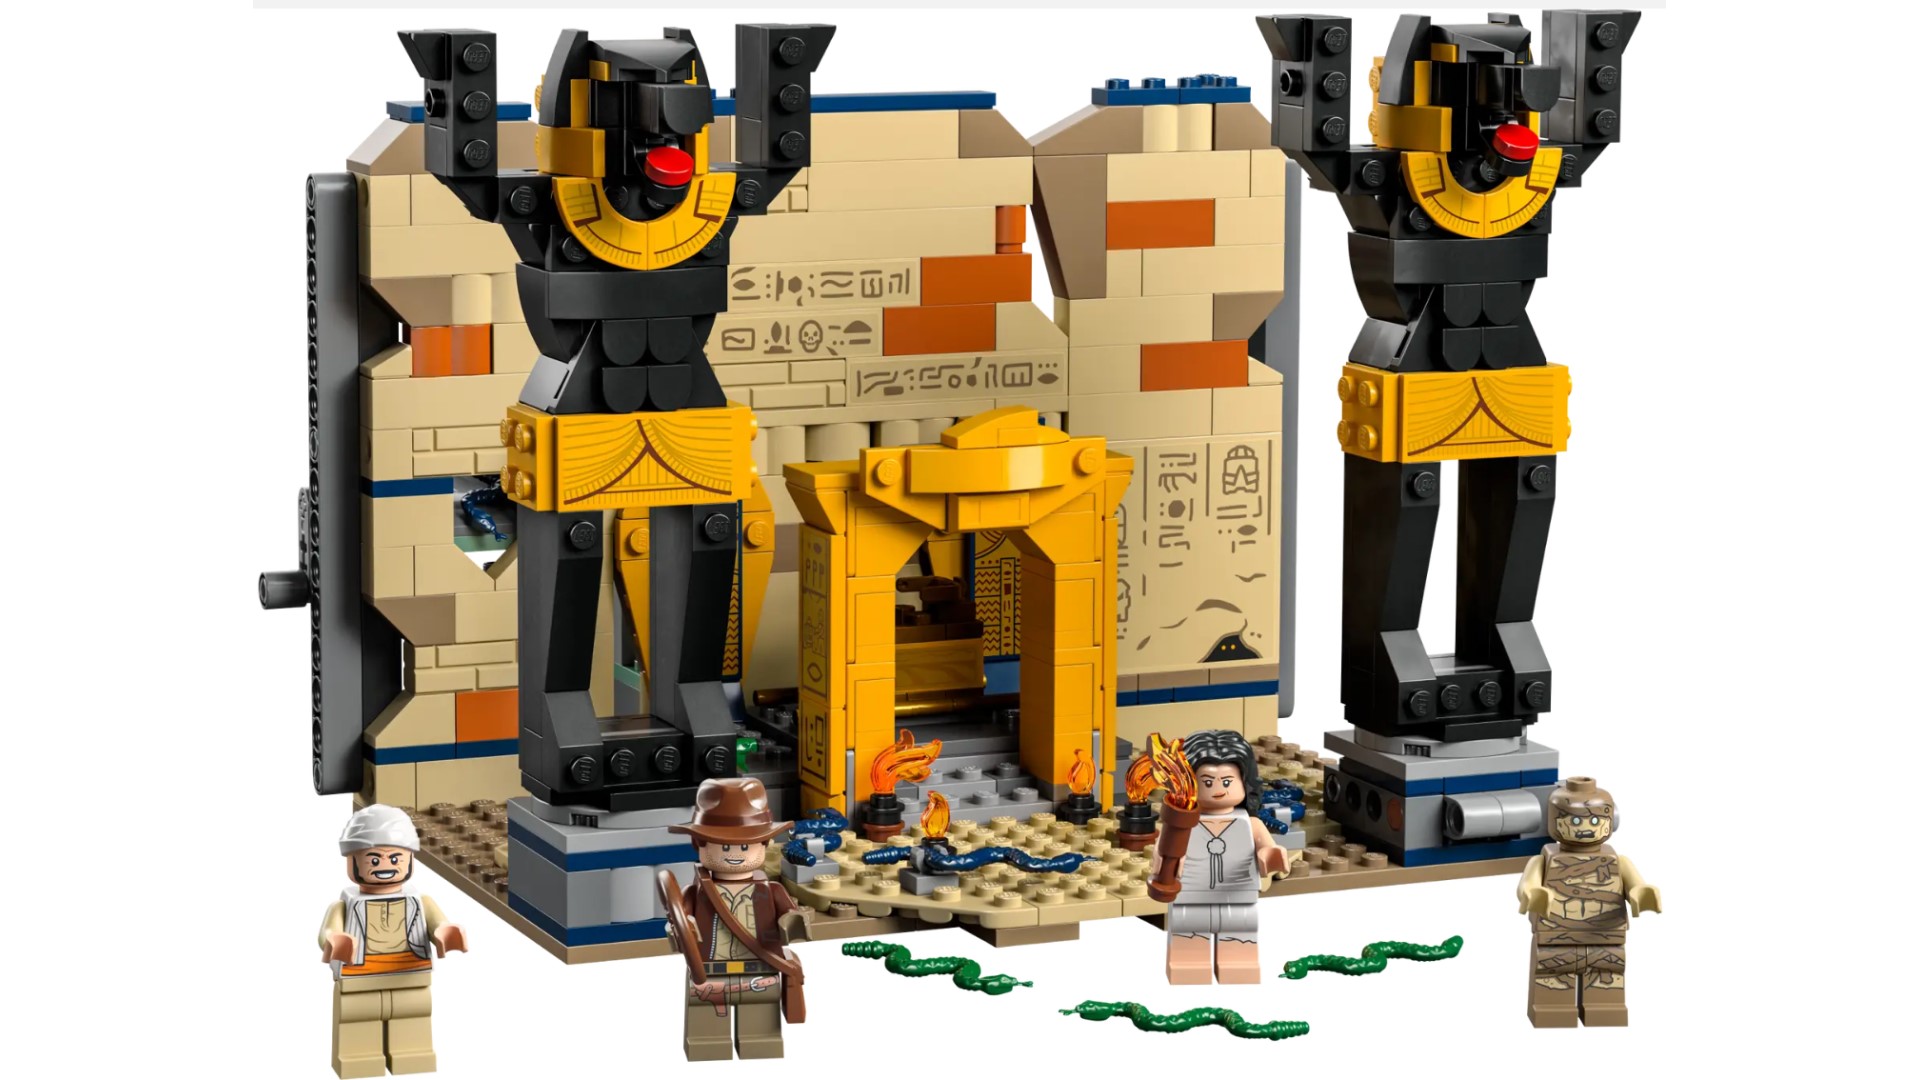 Top 10 LEGO Indiana Jones Sets WE NEED 